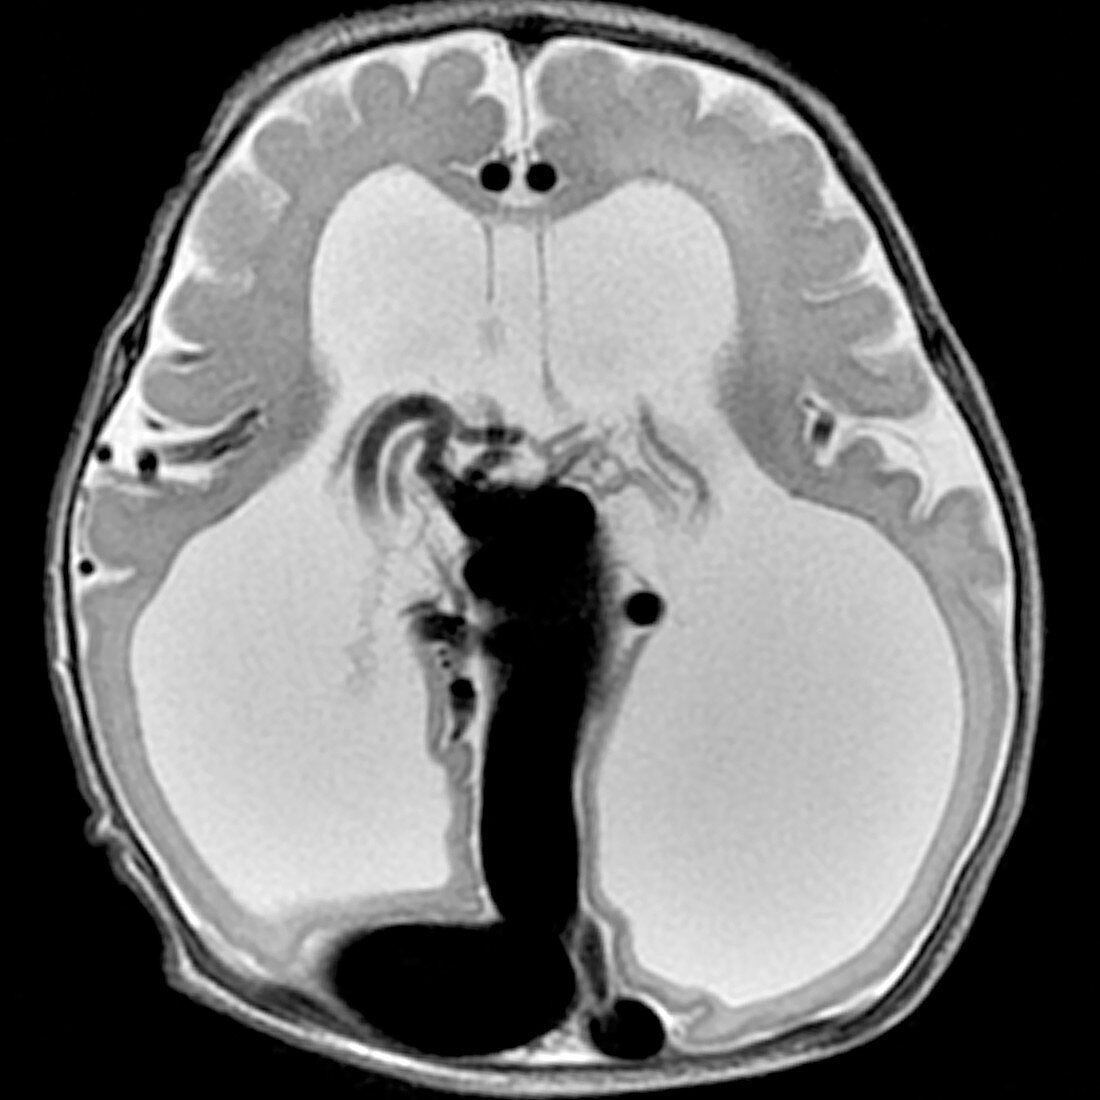 Vein of Galen Malformation, MRI